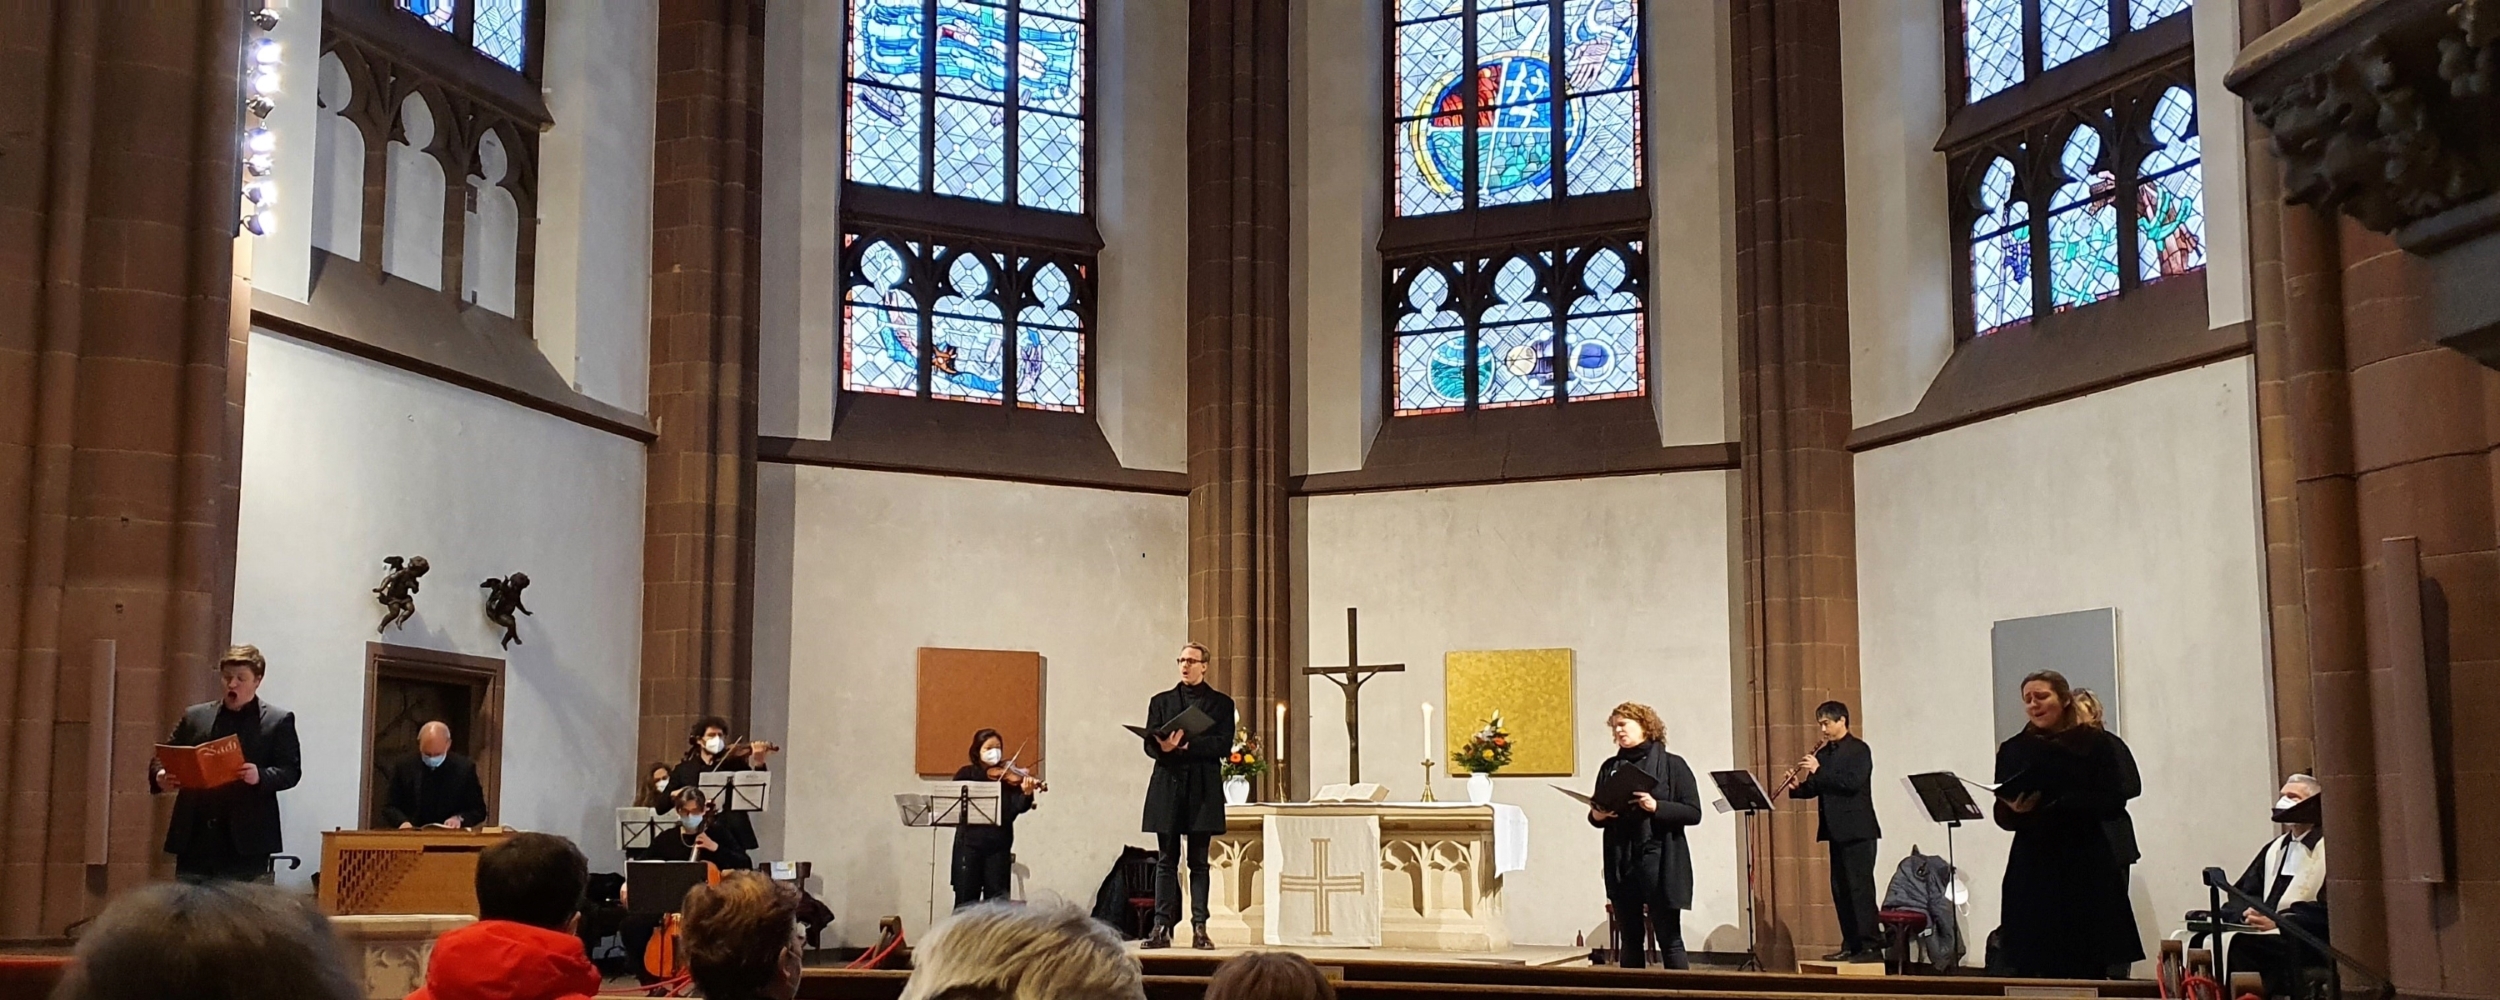 Kantatenaufführung im Gottesdienst 2021 unter COVID-19-Bedingungen in der Dreikönigskirche Frankfurt am Main